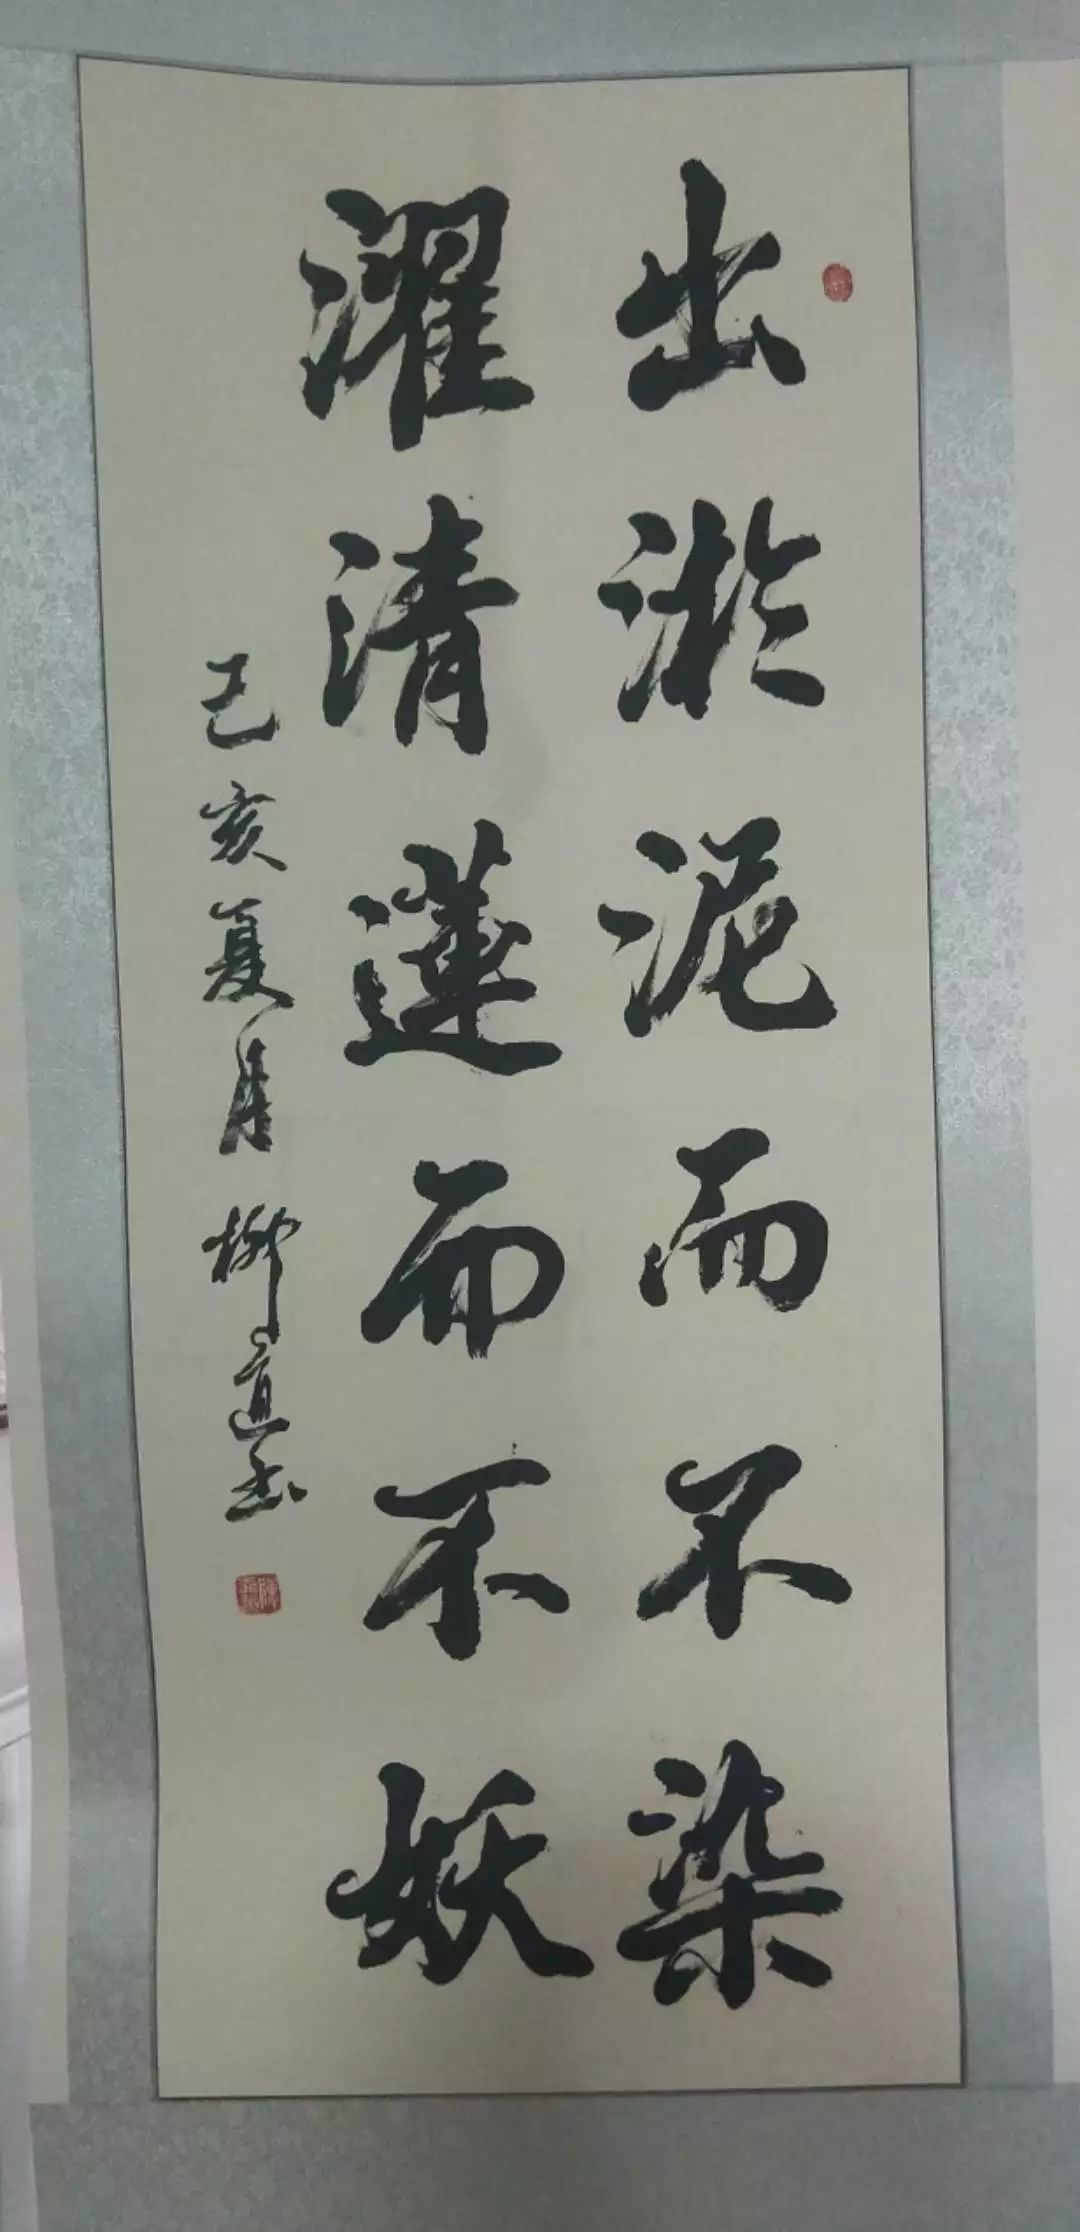 其中,书法作品主要为中华优秀传统文化中的廉政诗文词赋,名言警句